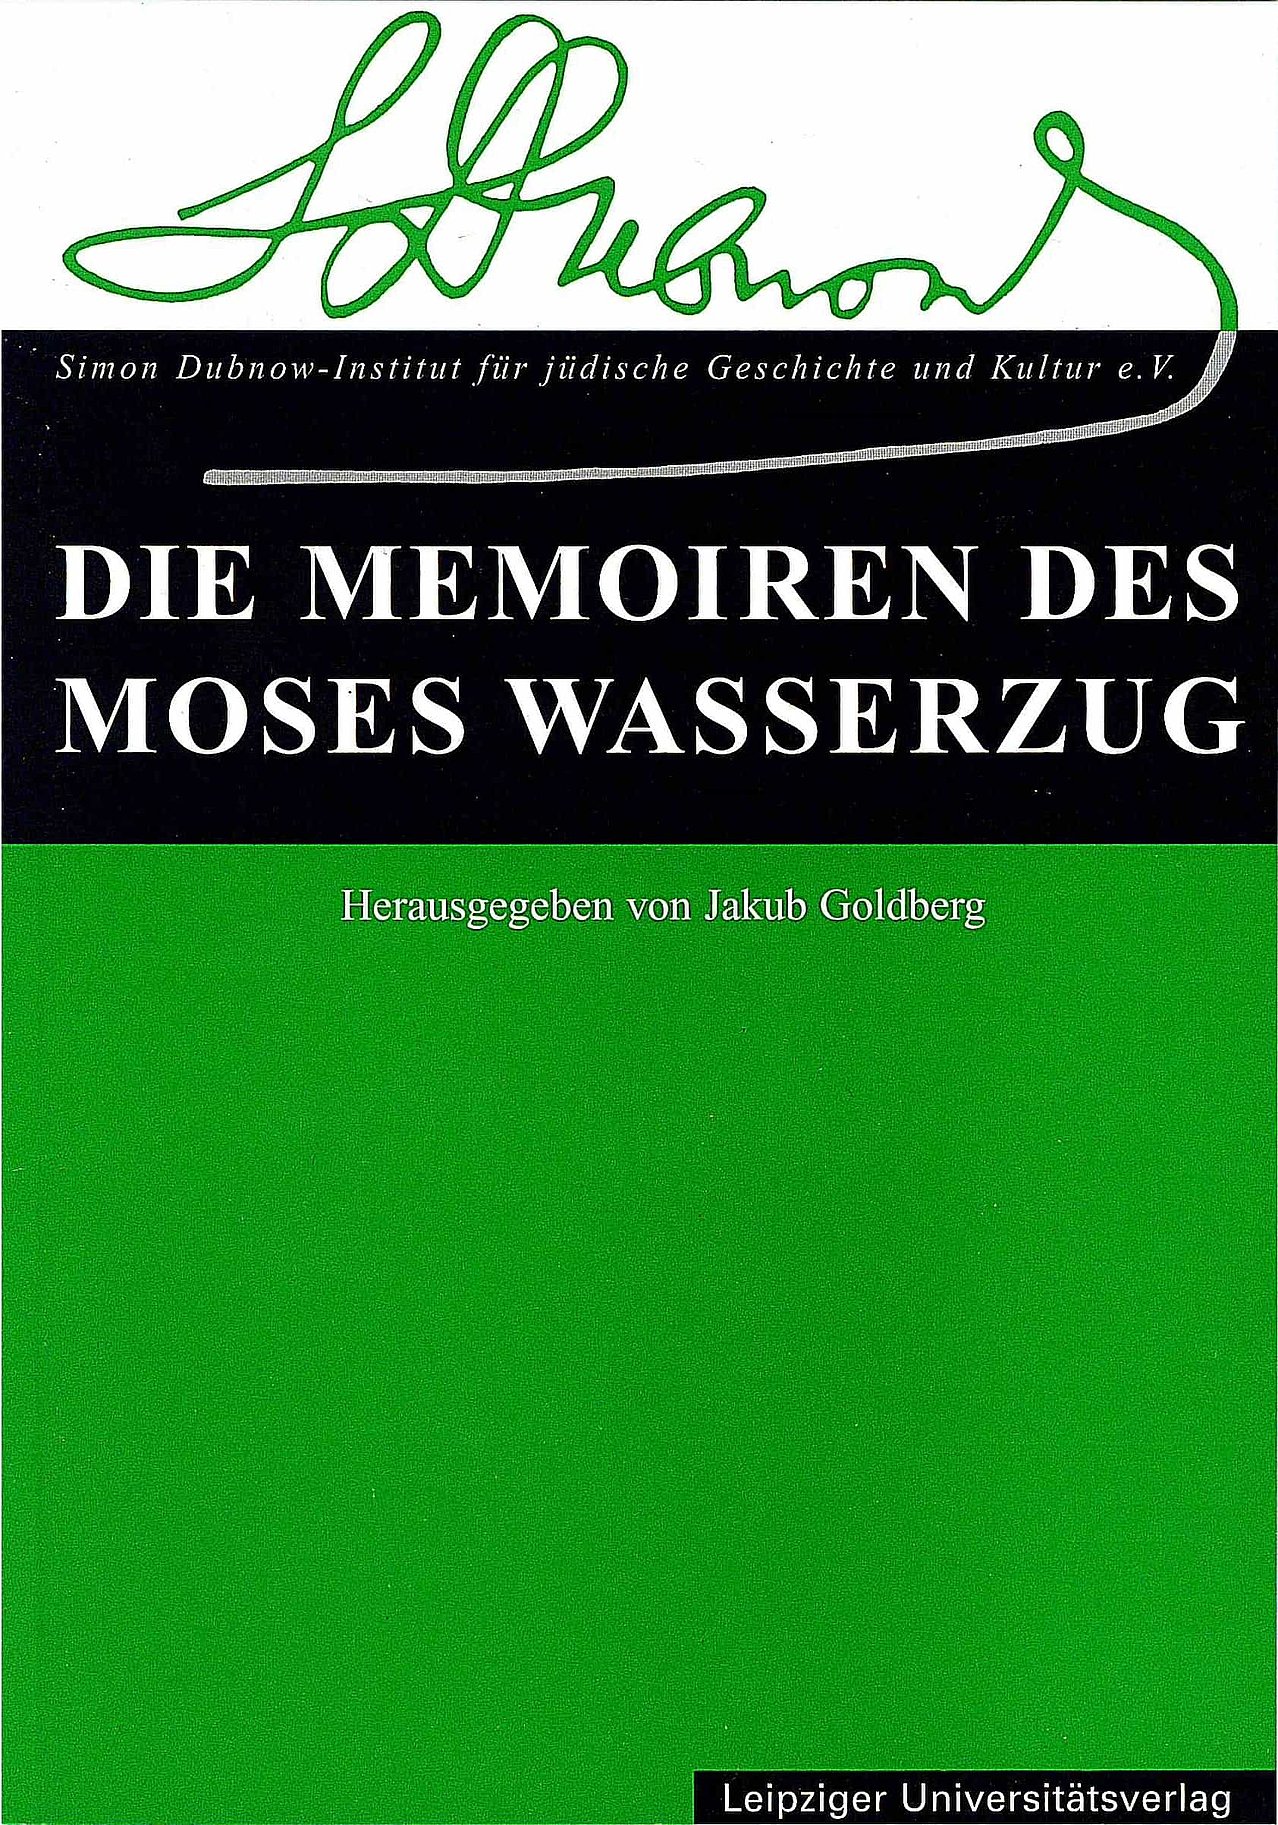 Publikation, Die Memoiren des Moses Wasserzug, 2001